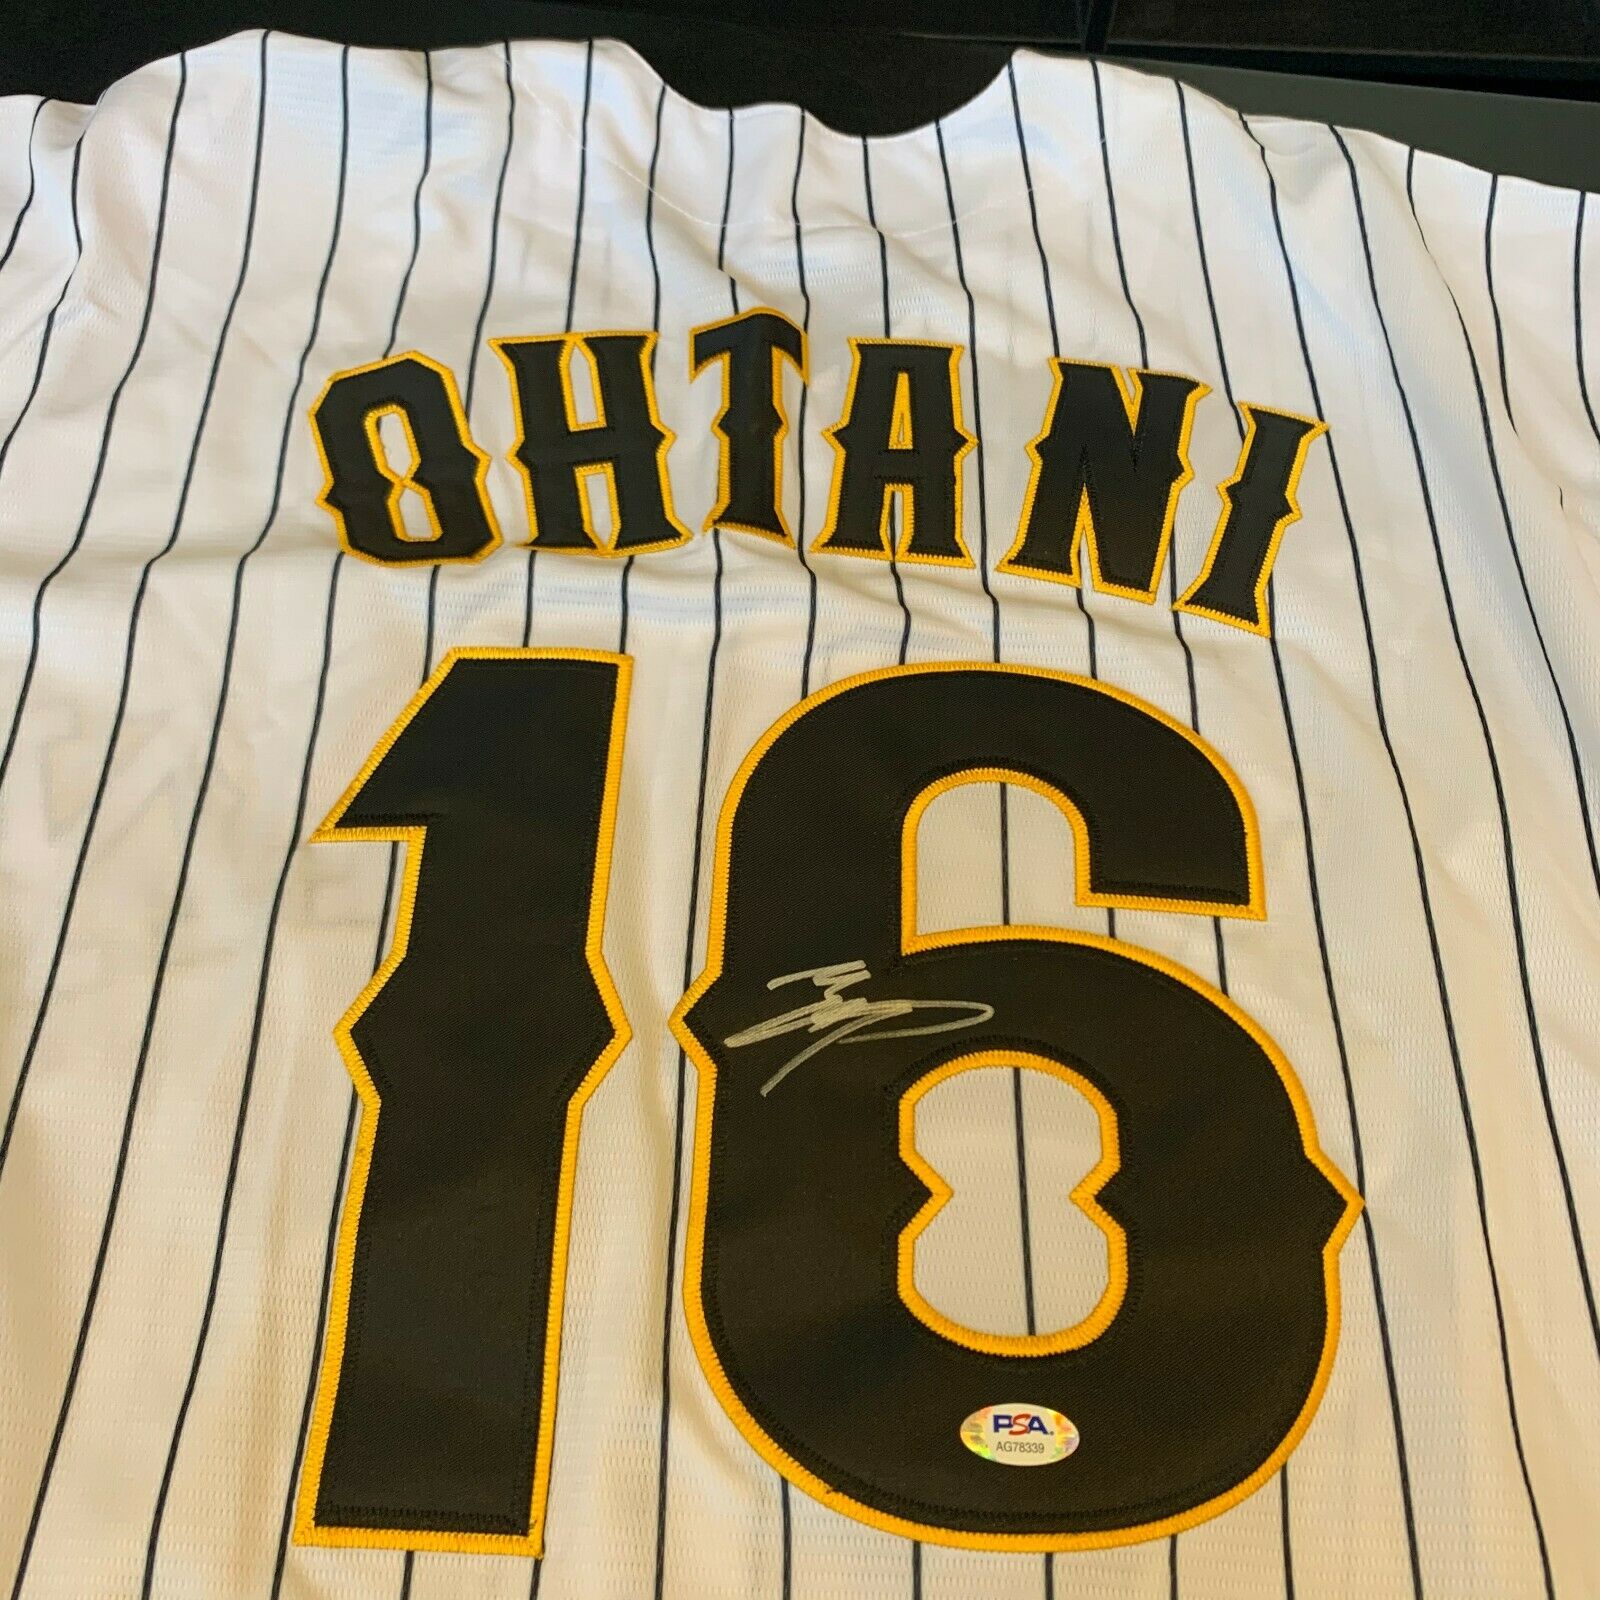 Shohei Ohtani Signed Jersey, Baseball & Bat